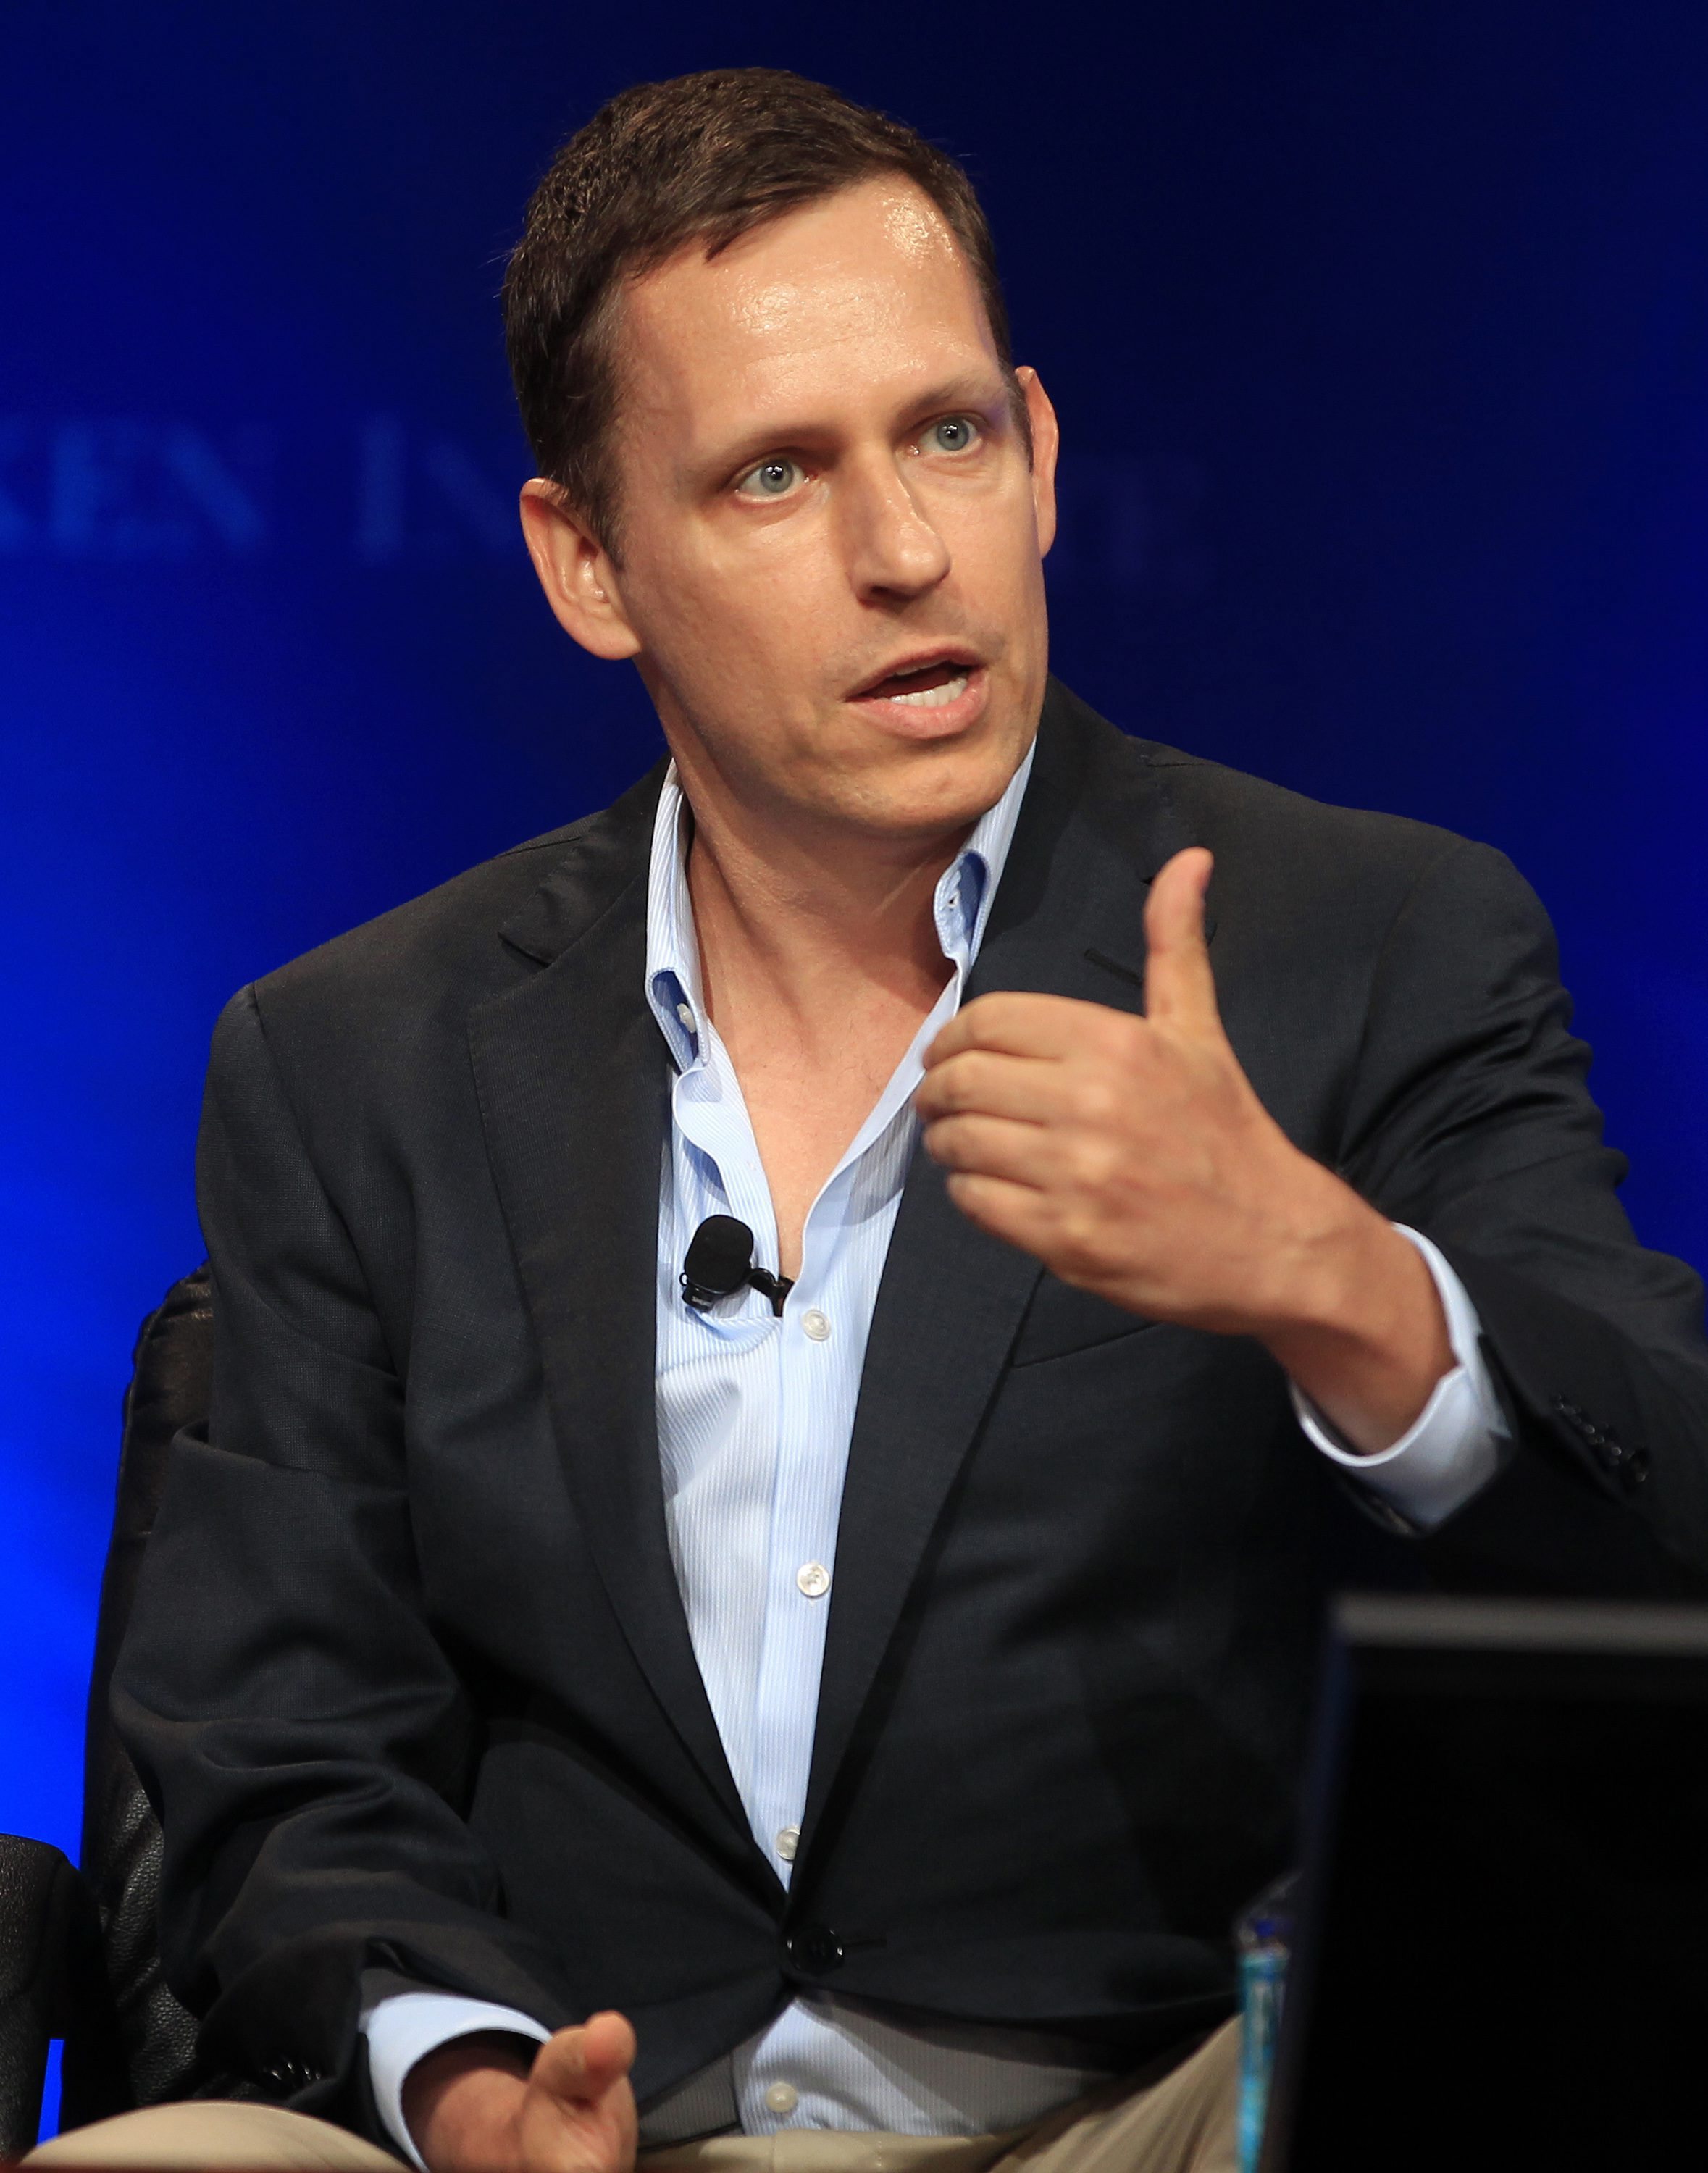 Peter Thiel, el inversor ultraliberal que desat el colapso bancario del Silicon Valley Bank